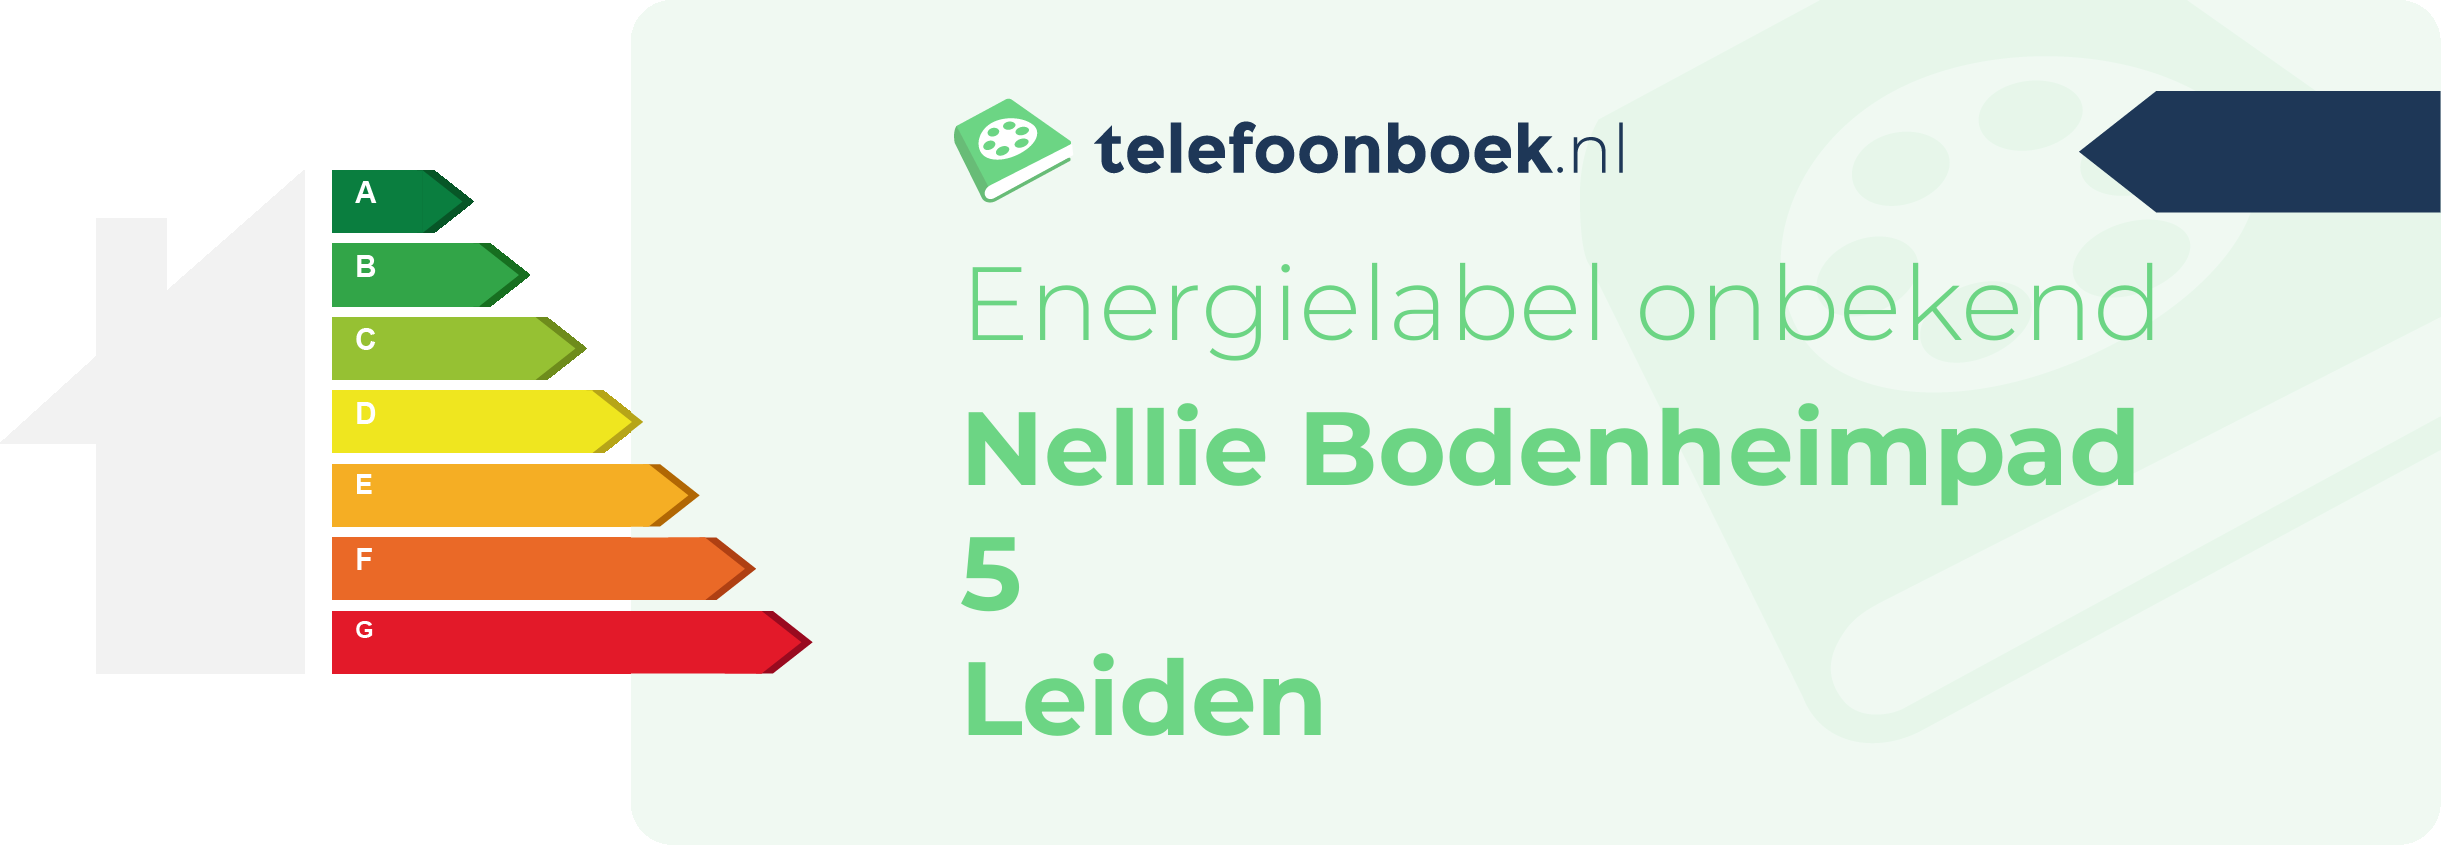 Energielabel Nellie Bodenheimpad 5 Leiden